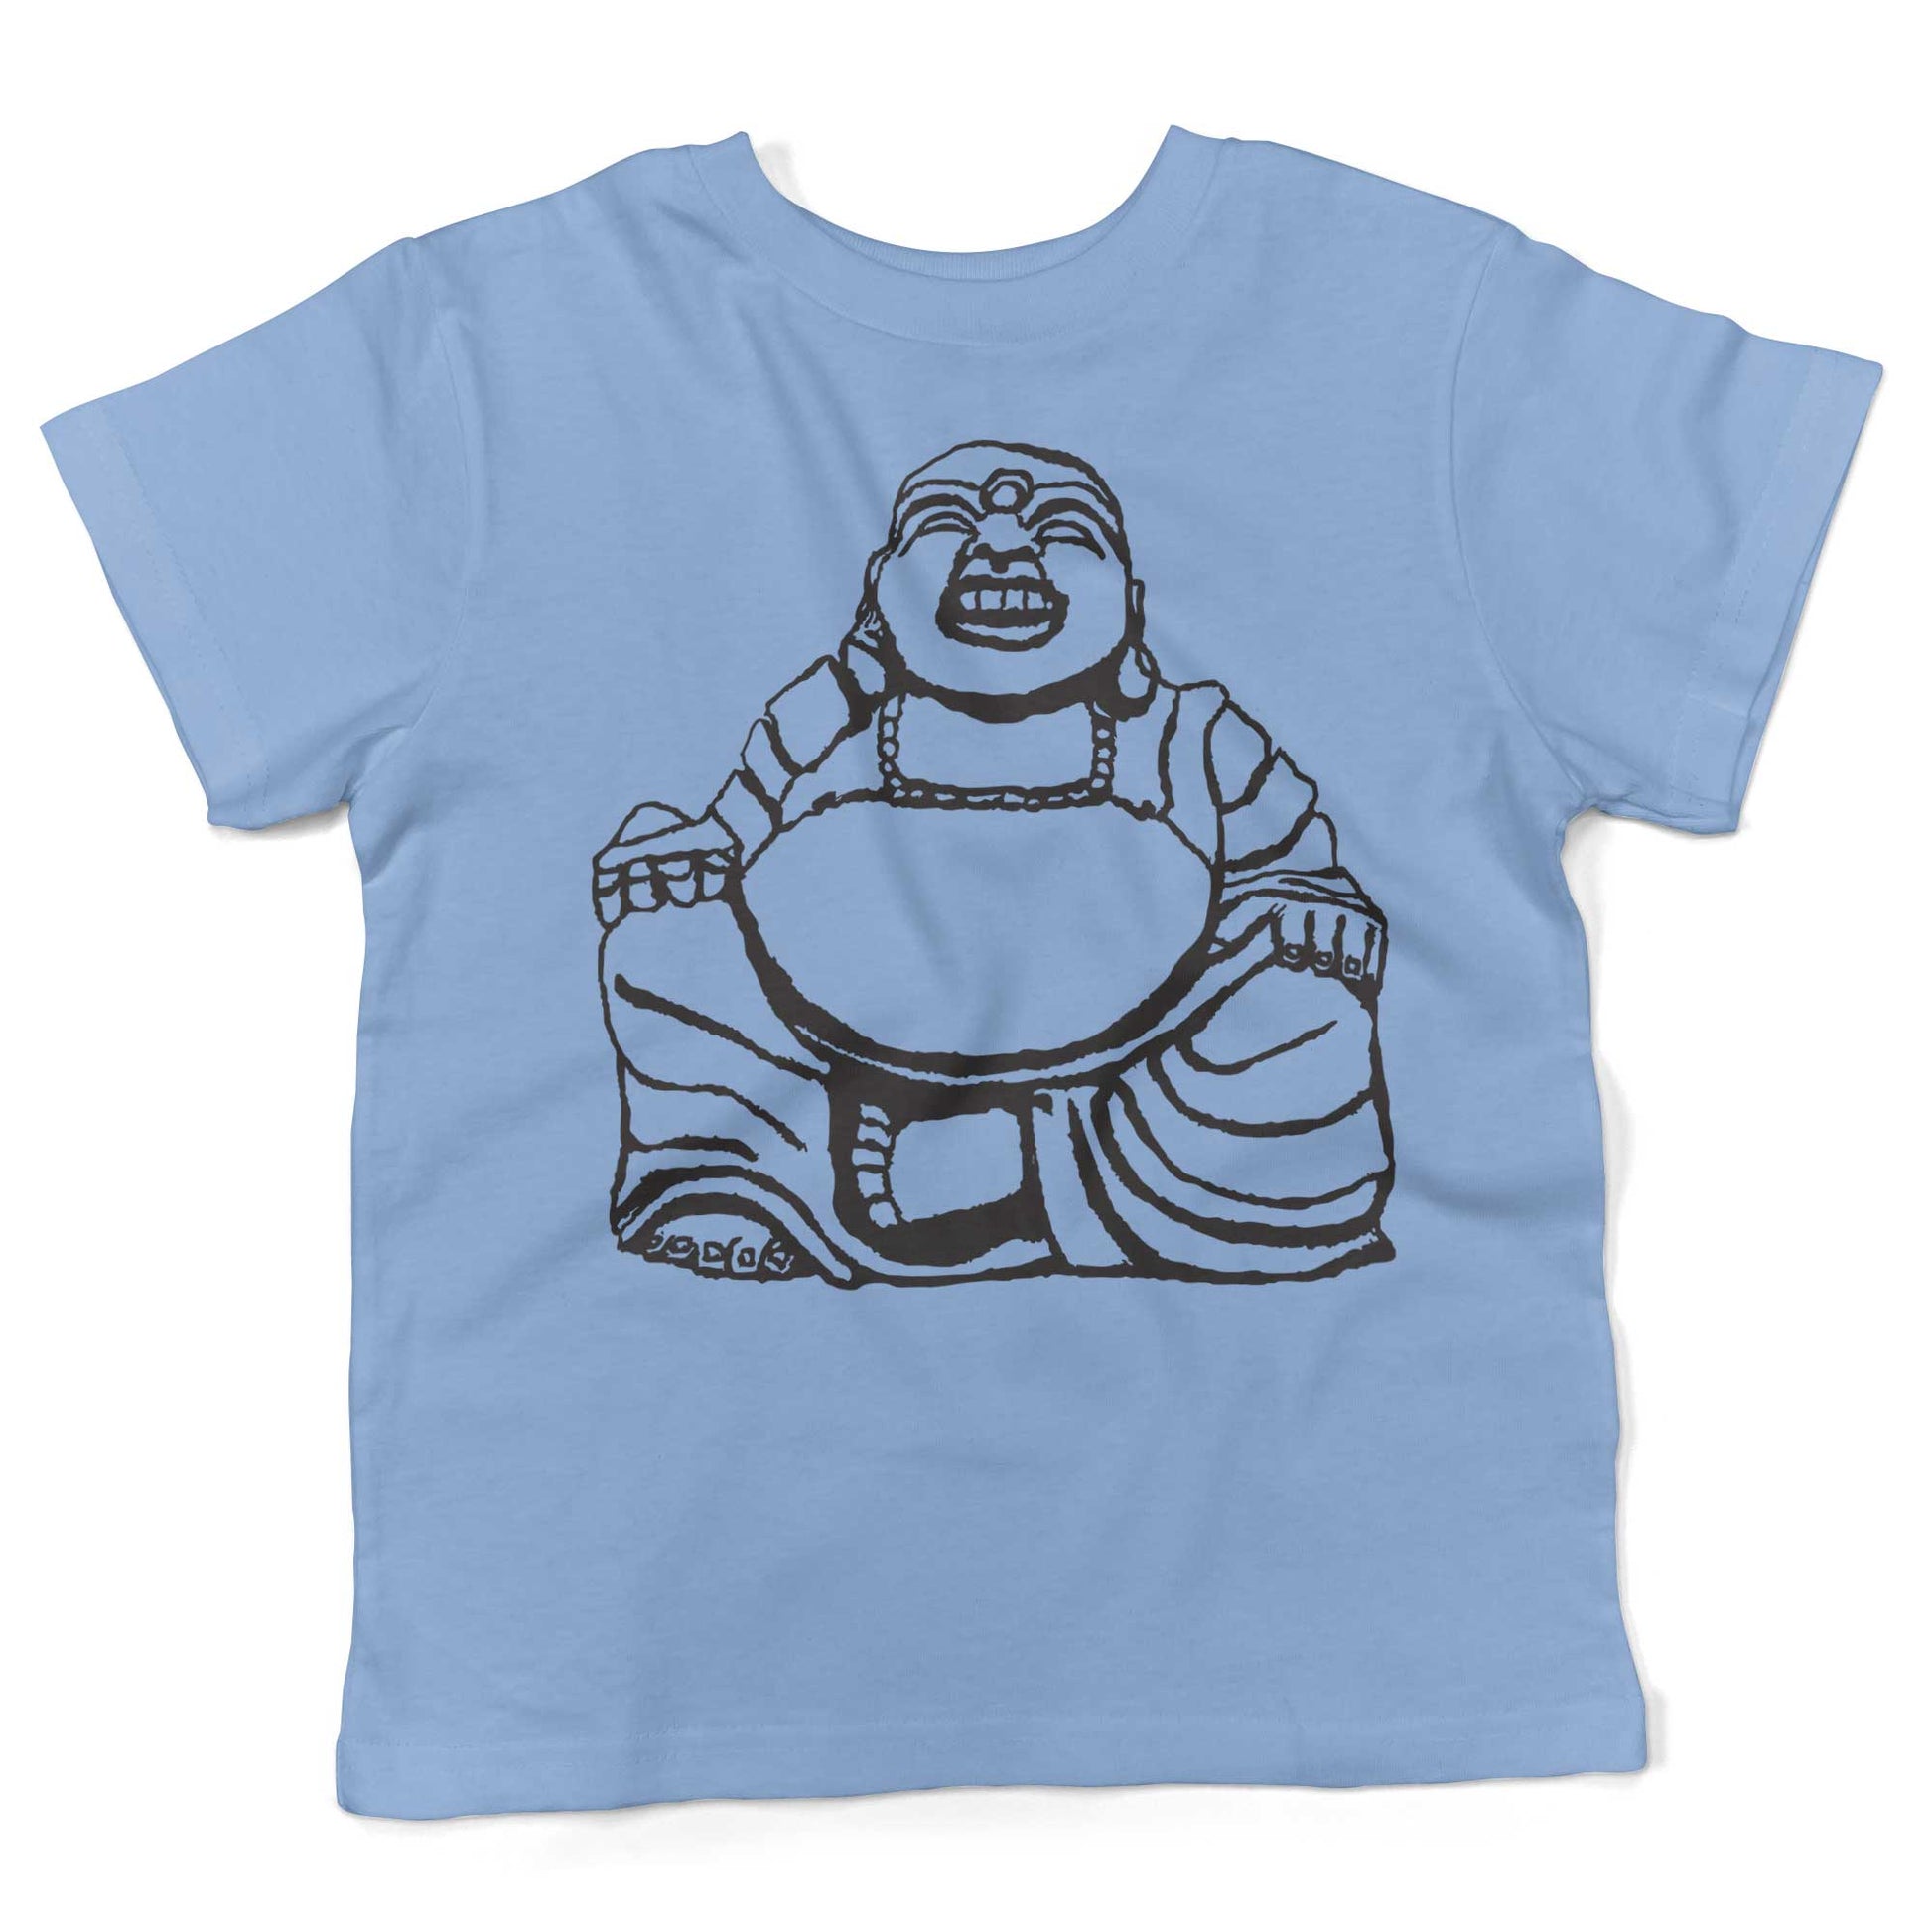 Laughing Buddha Toddler Shirt-Organic Baby Blue-2T